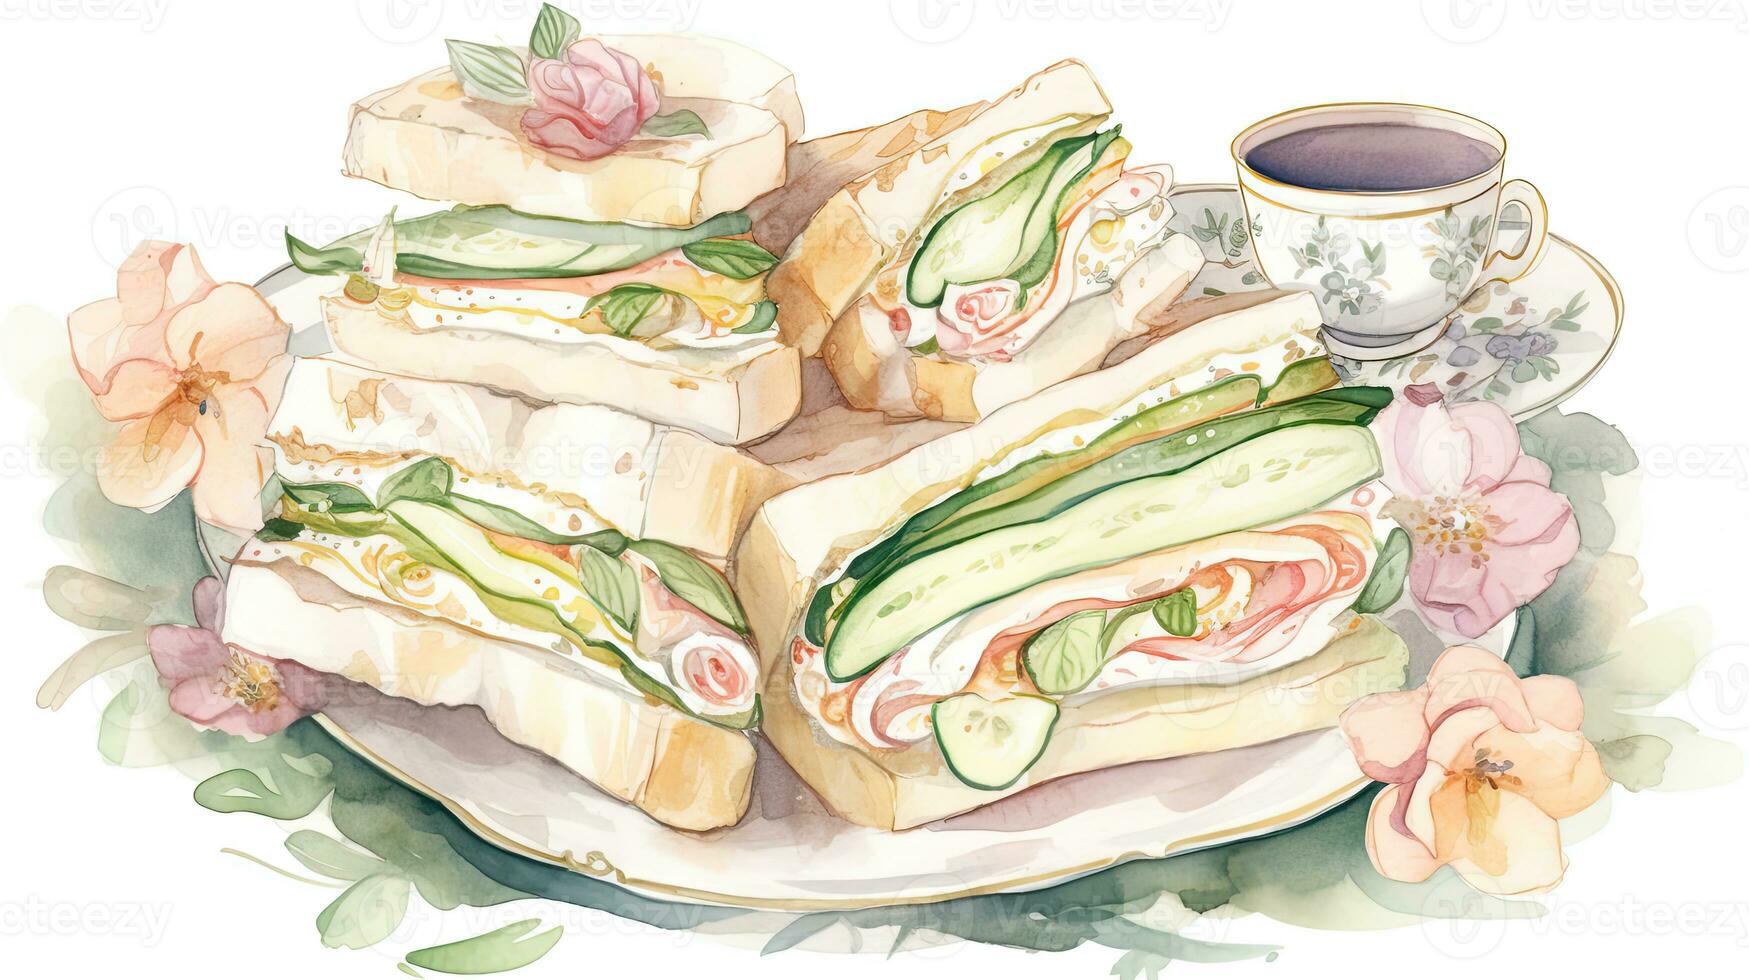 hierba comida acuarela pintura de emparedado comestible plato con flor y té taza para fiesta concepto. foto